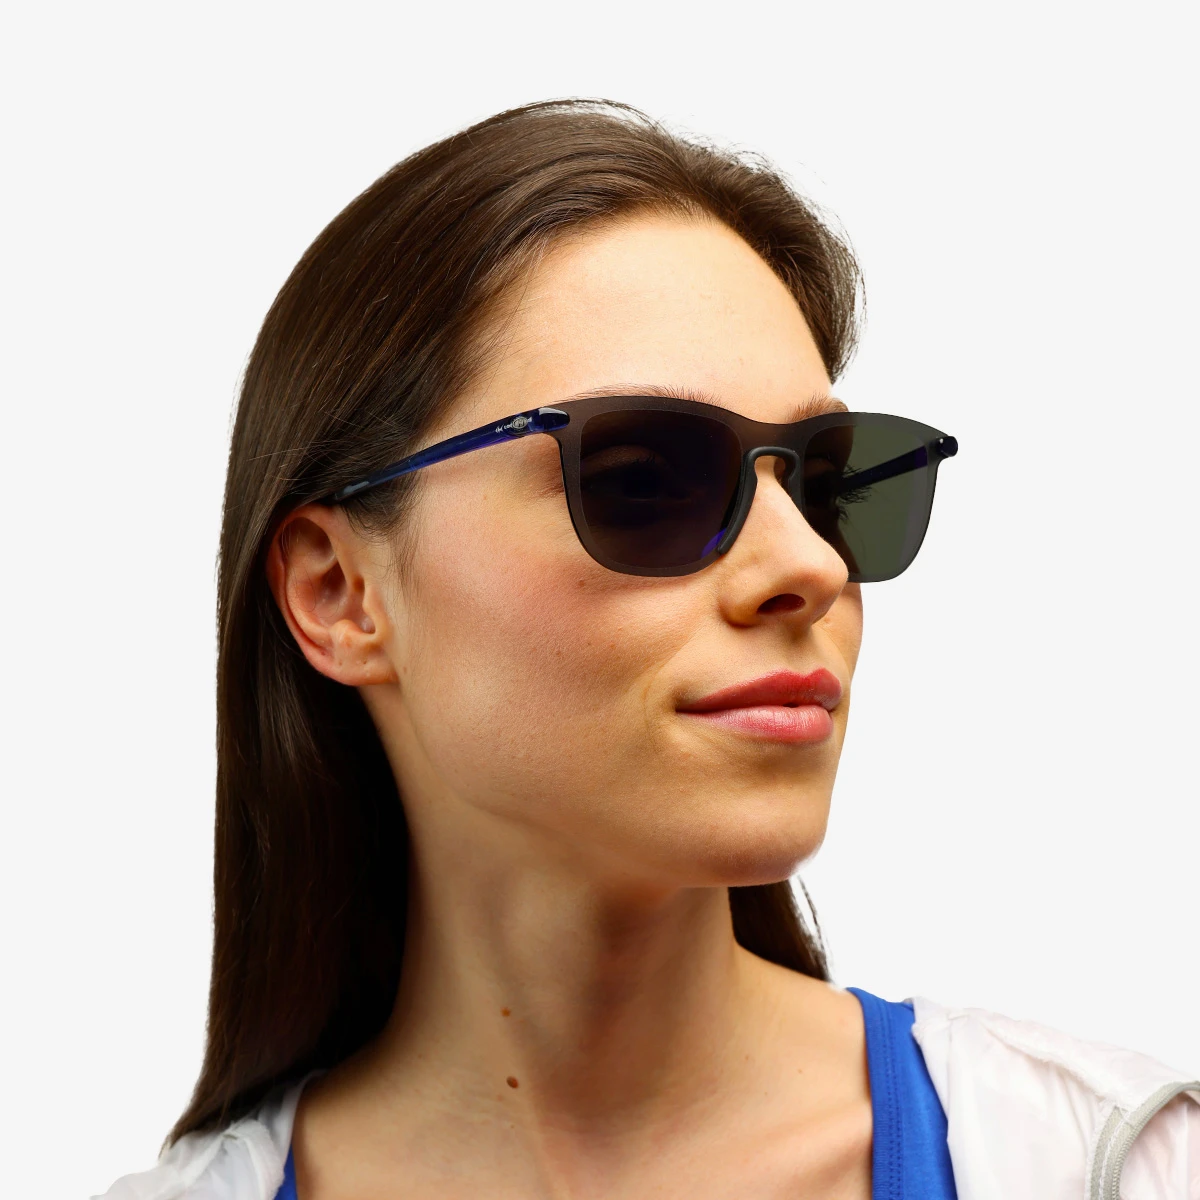  Sport Sunglasses For Women